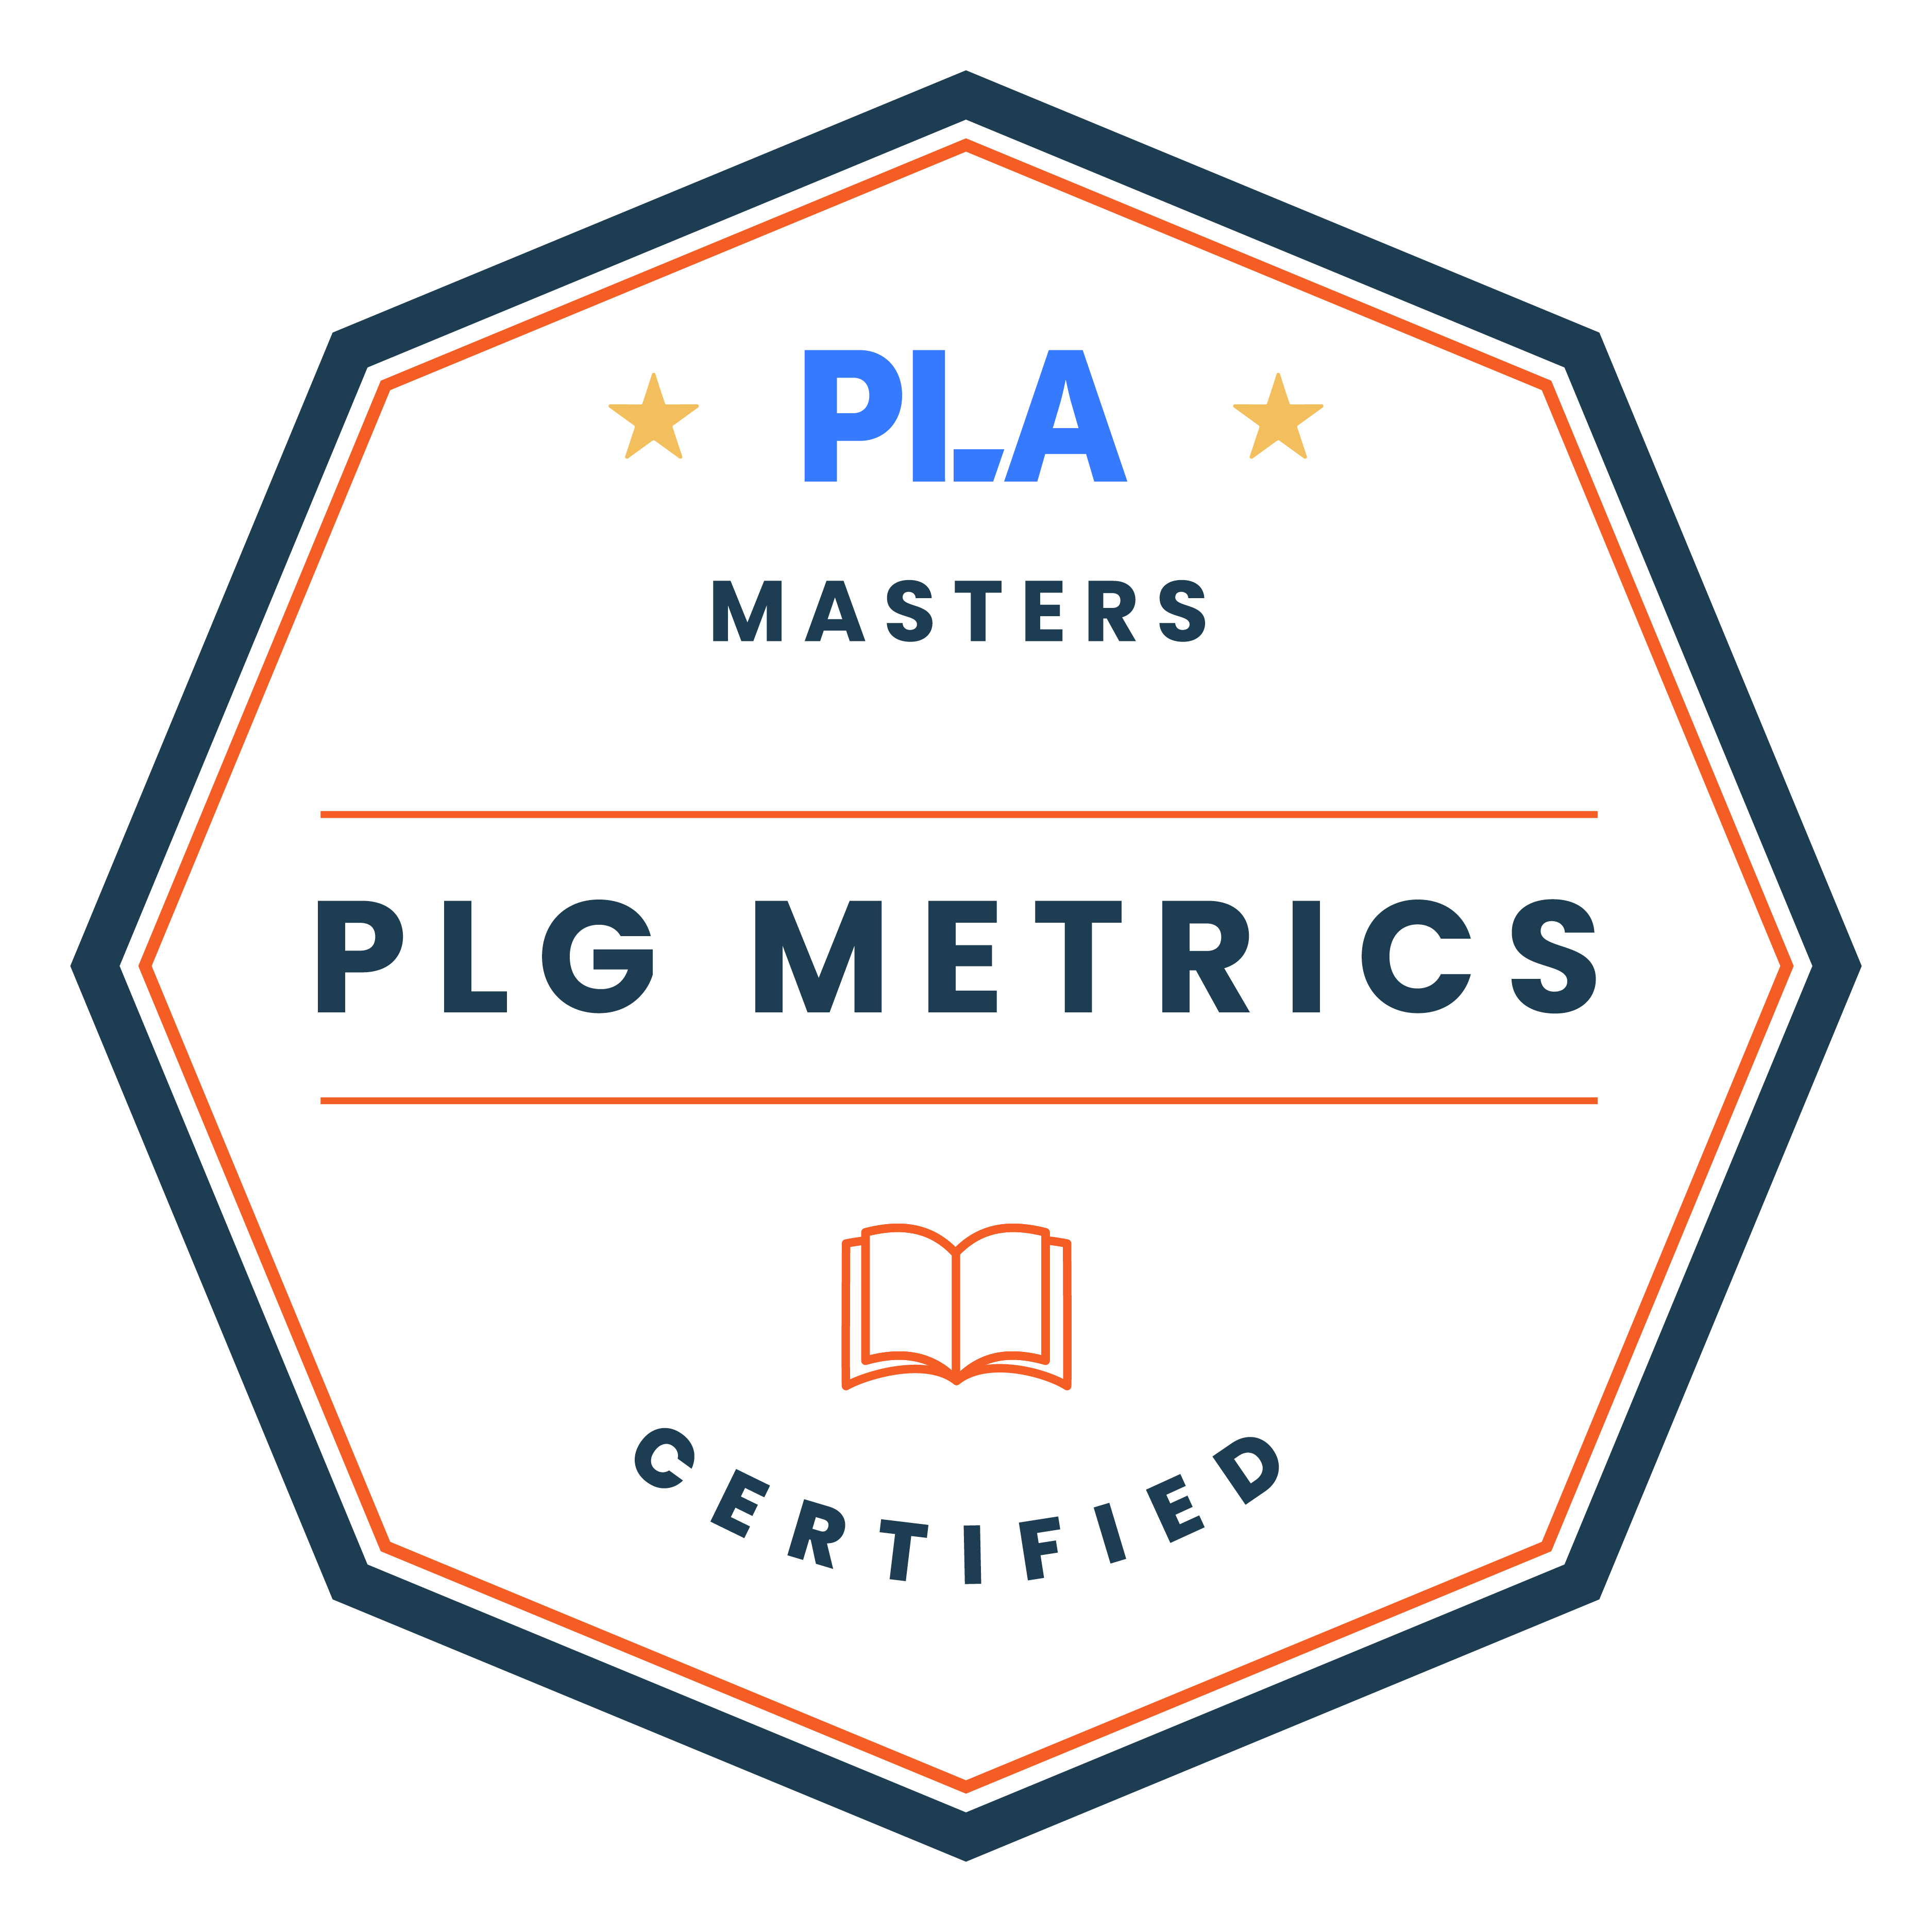 PLG metrics